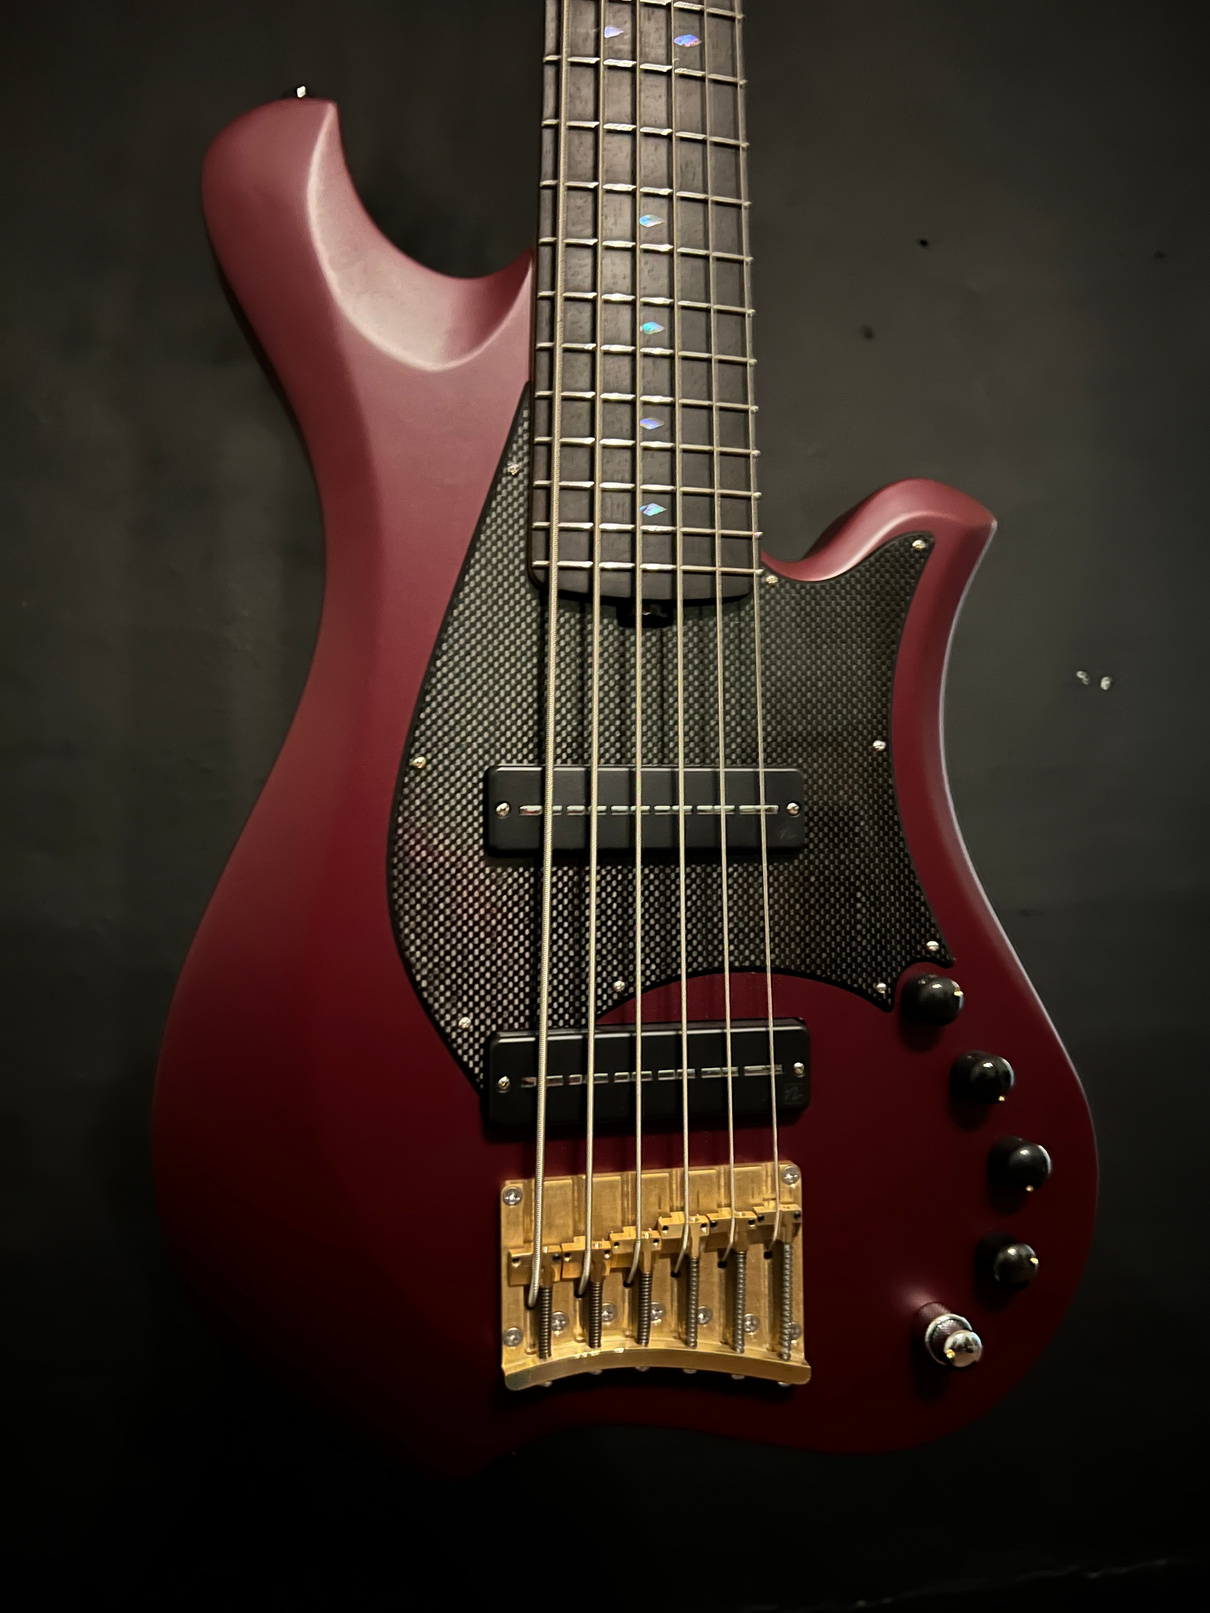 Marleo VI strings bass satin cabernet, bridge detail